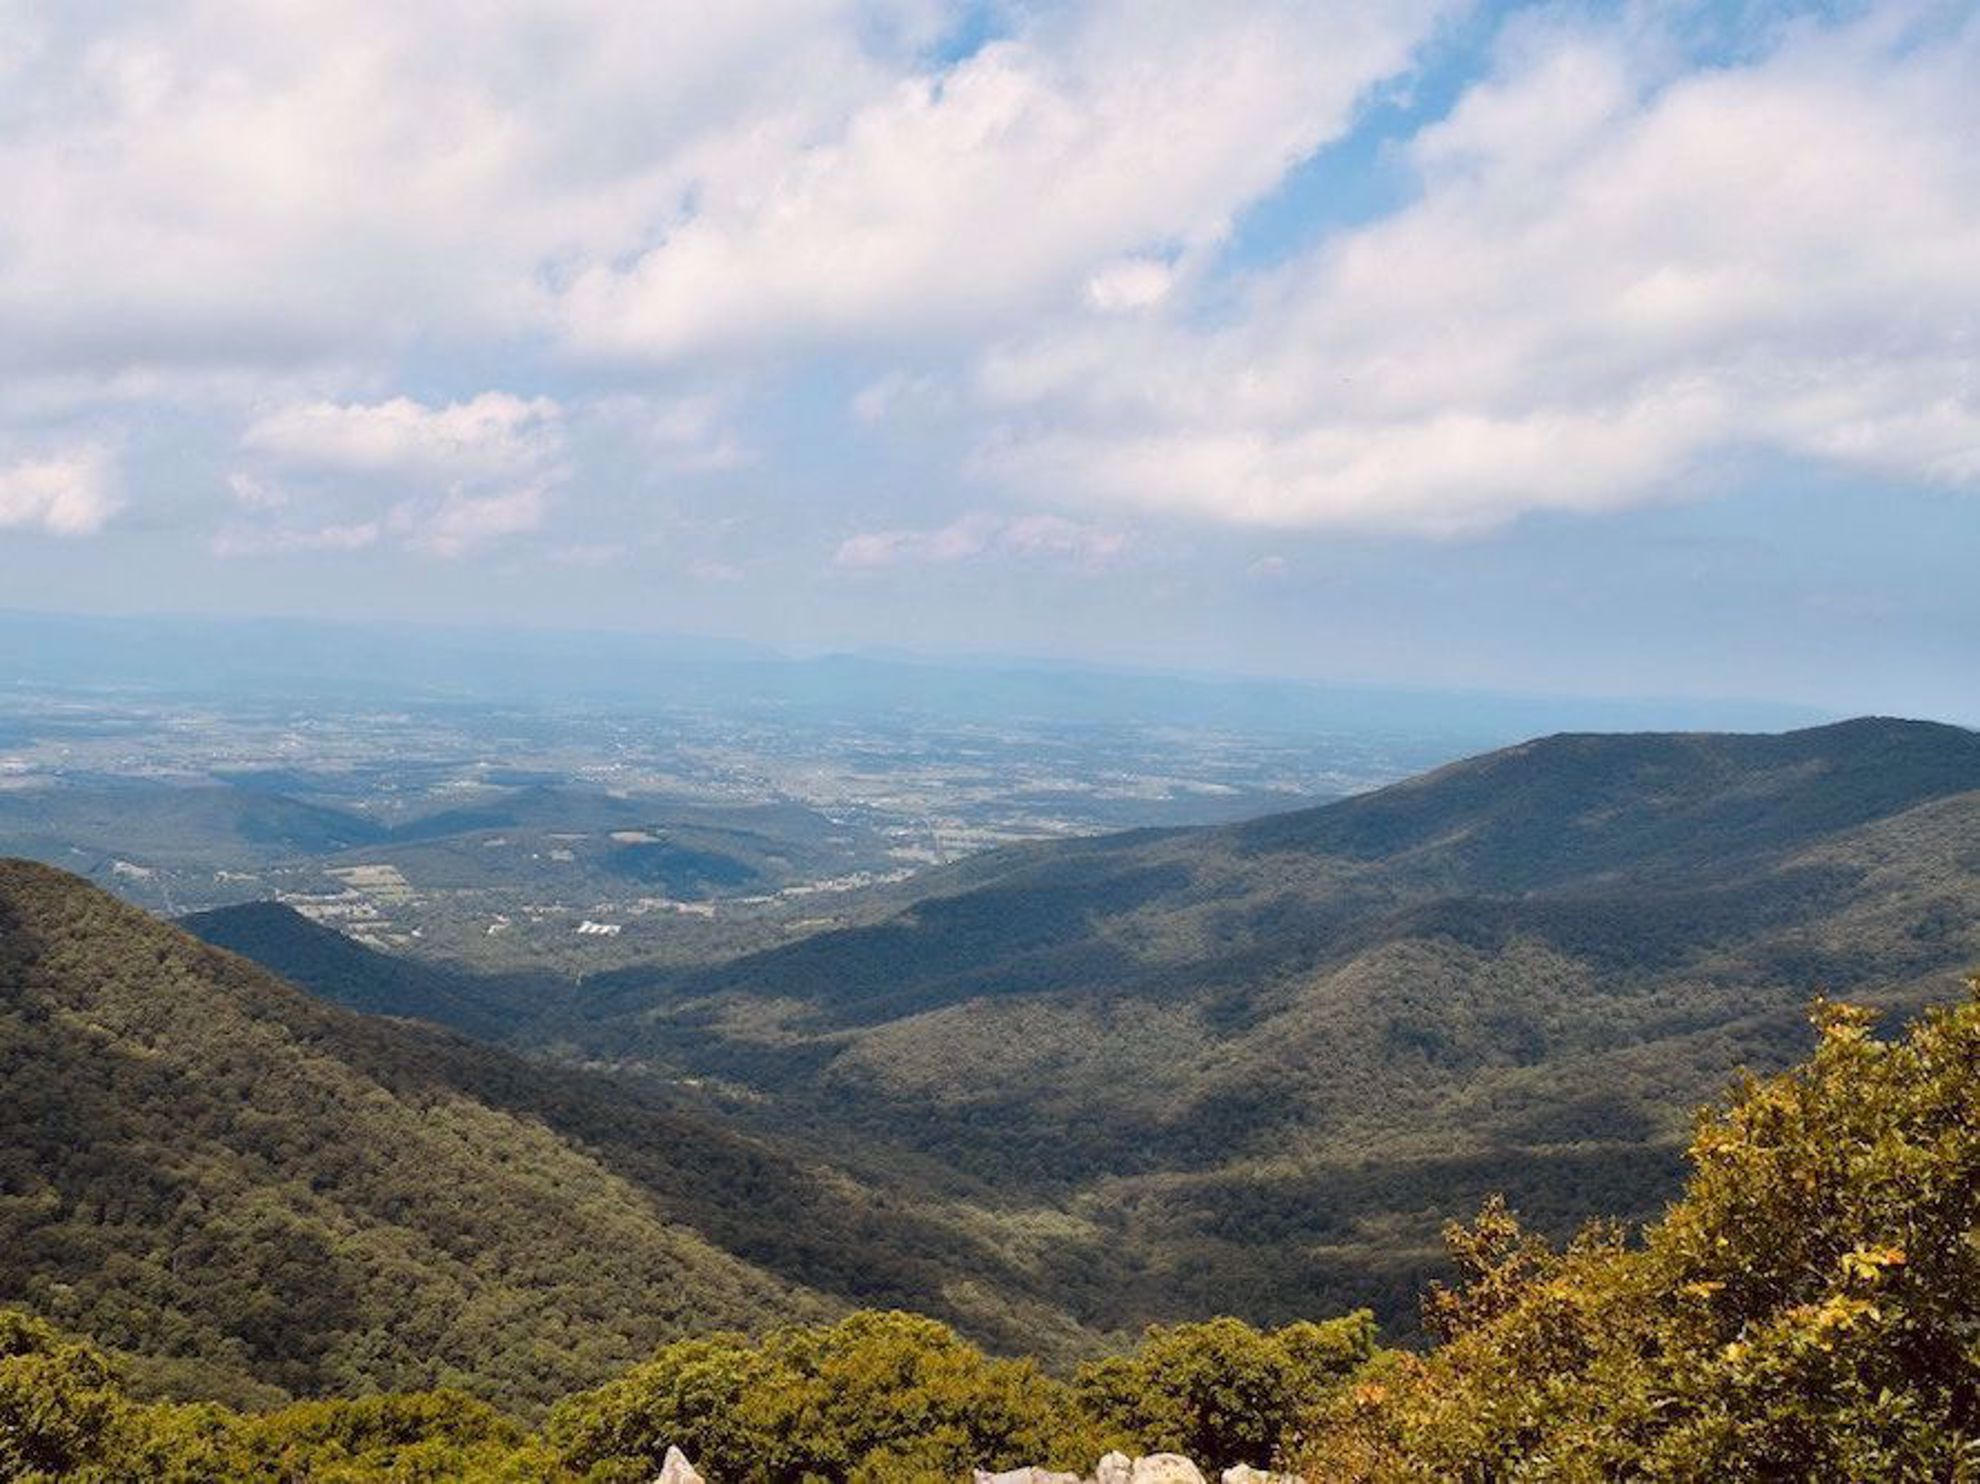 Appalachian mountain view